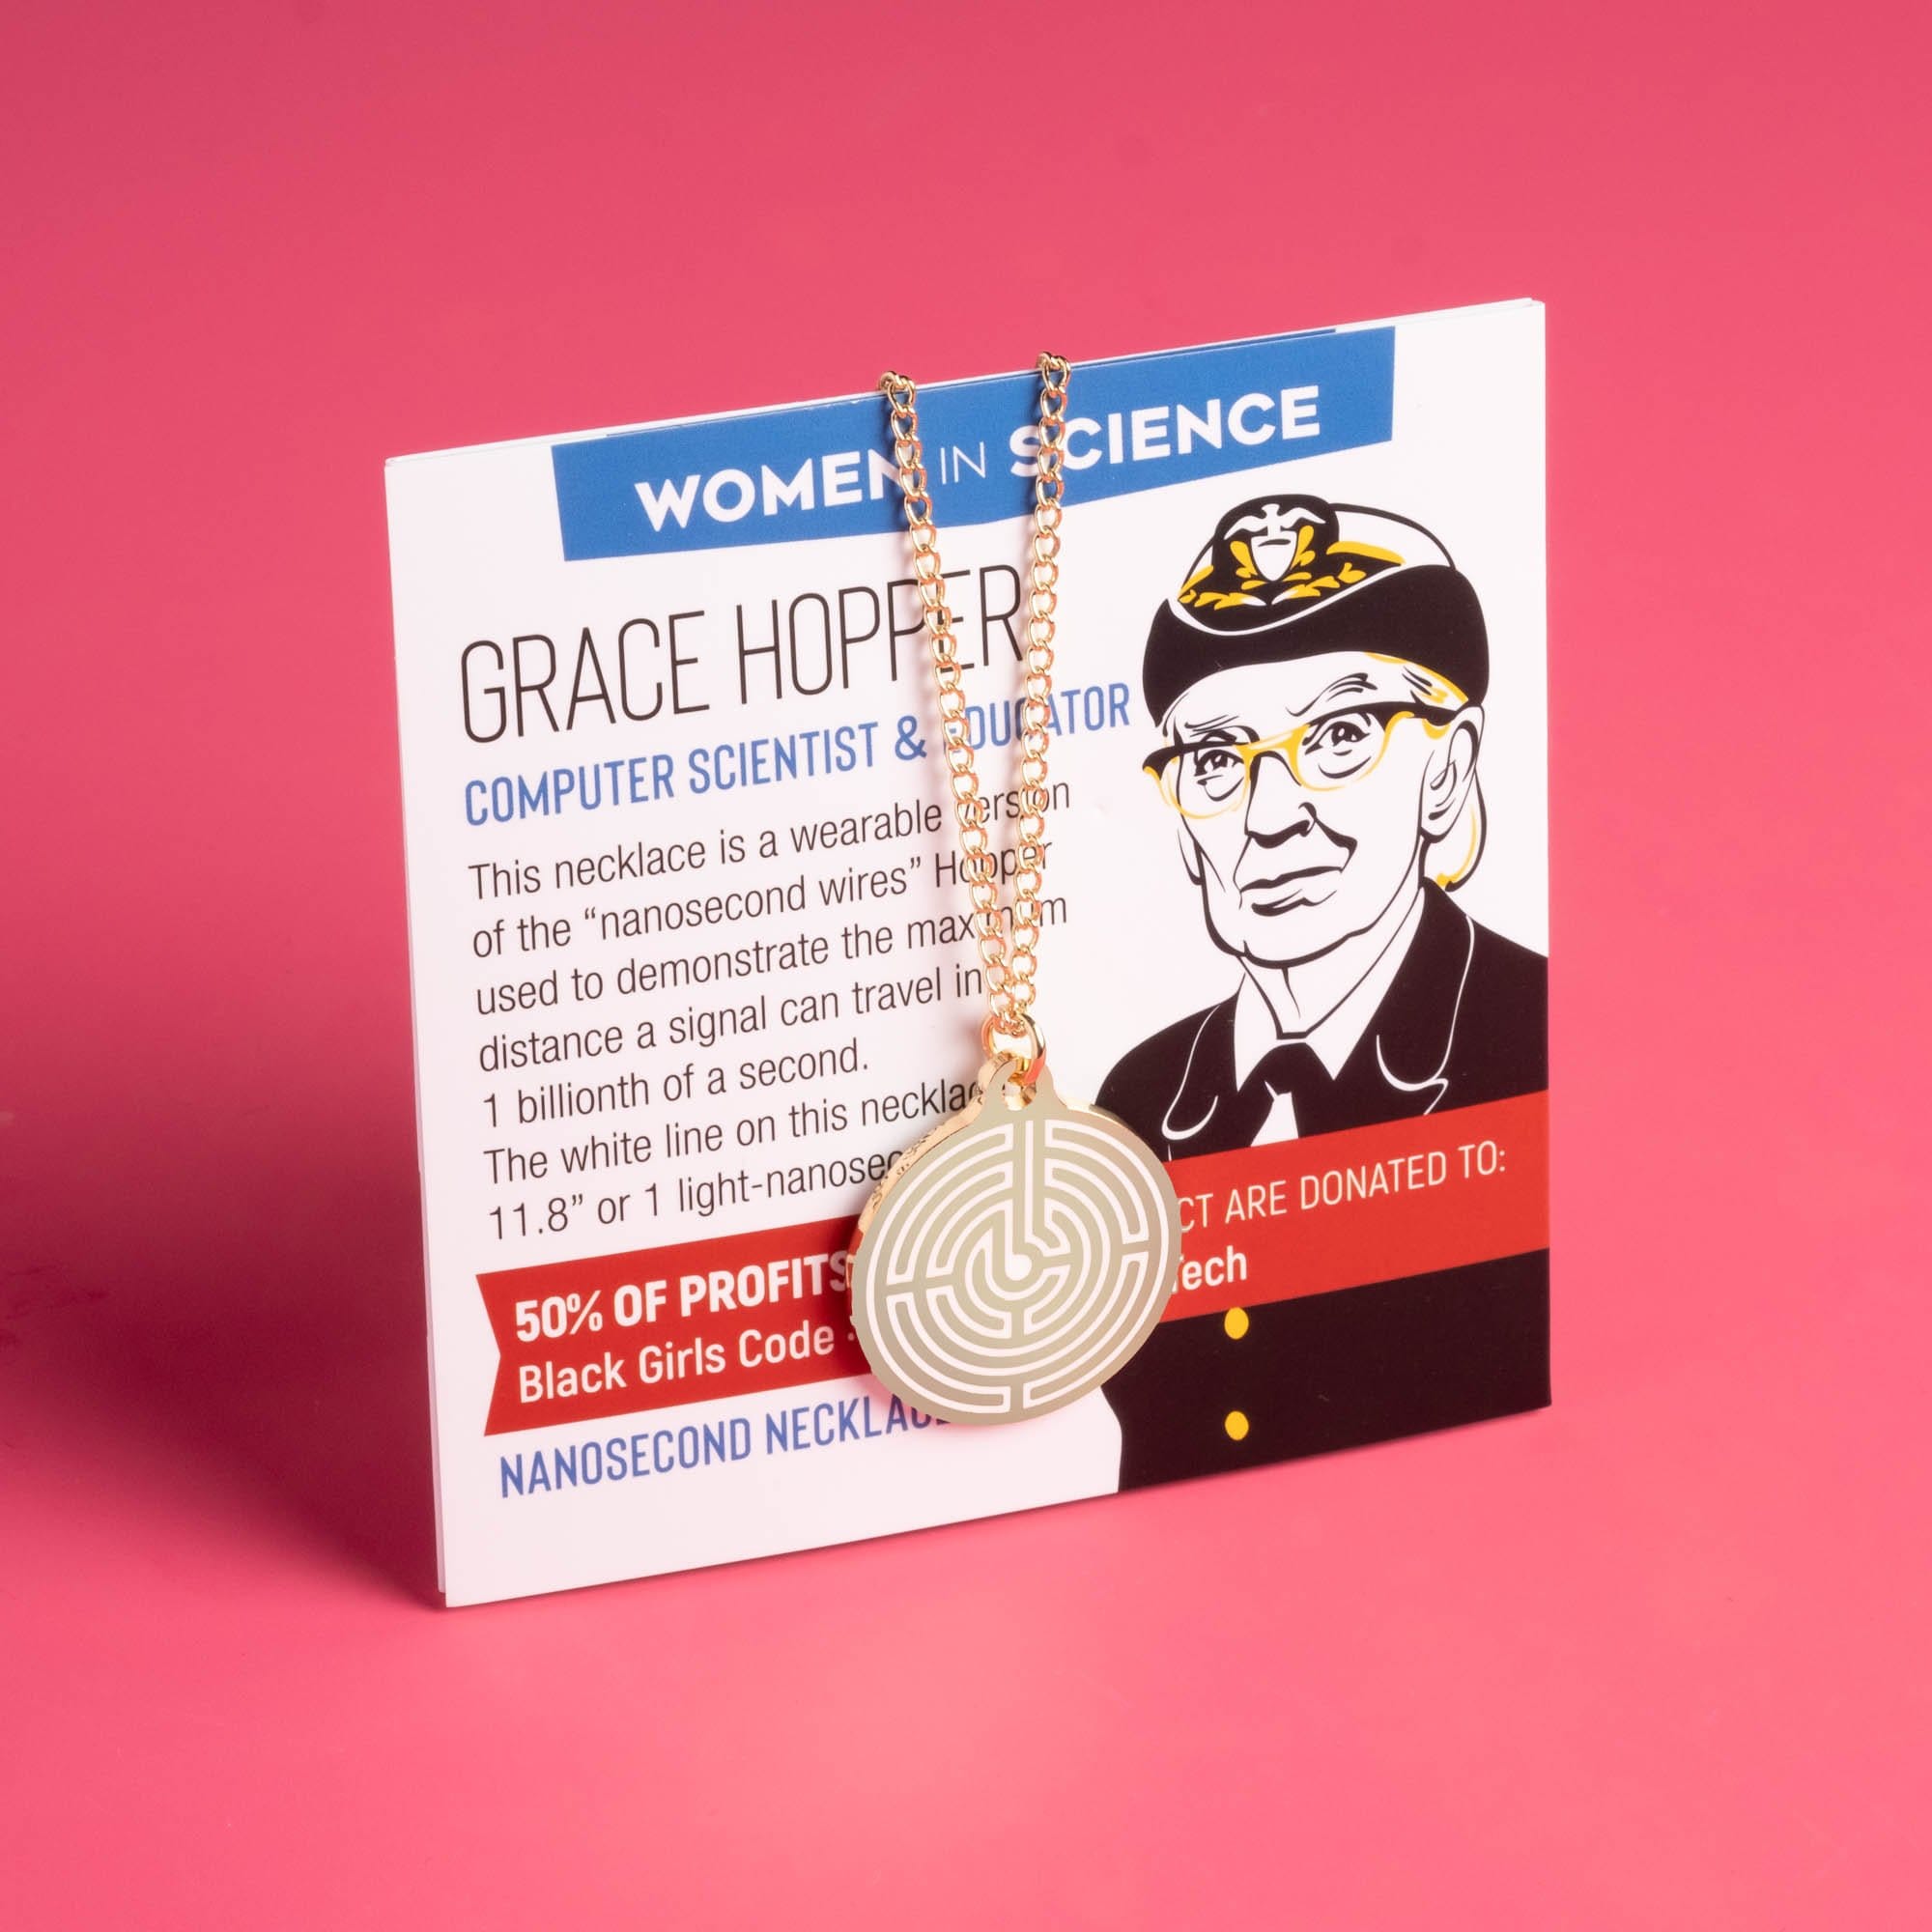 Grace Hopper / Nanosecond Necklace